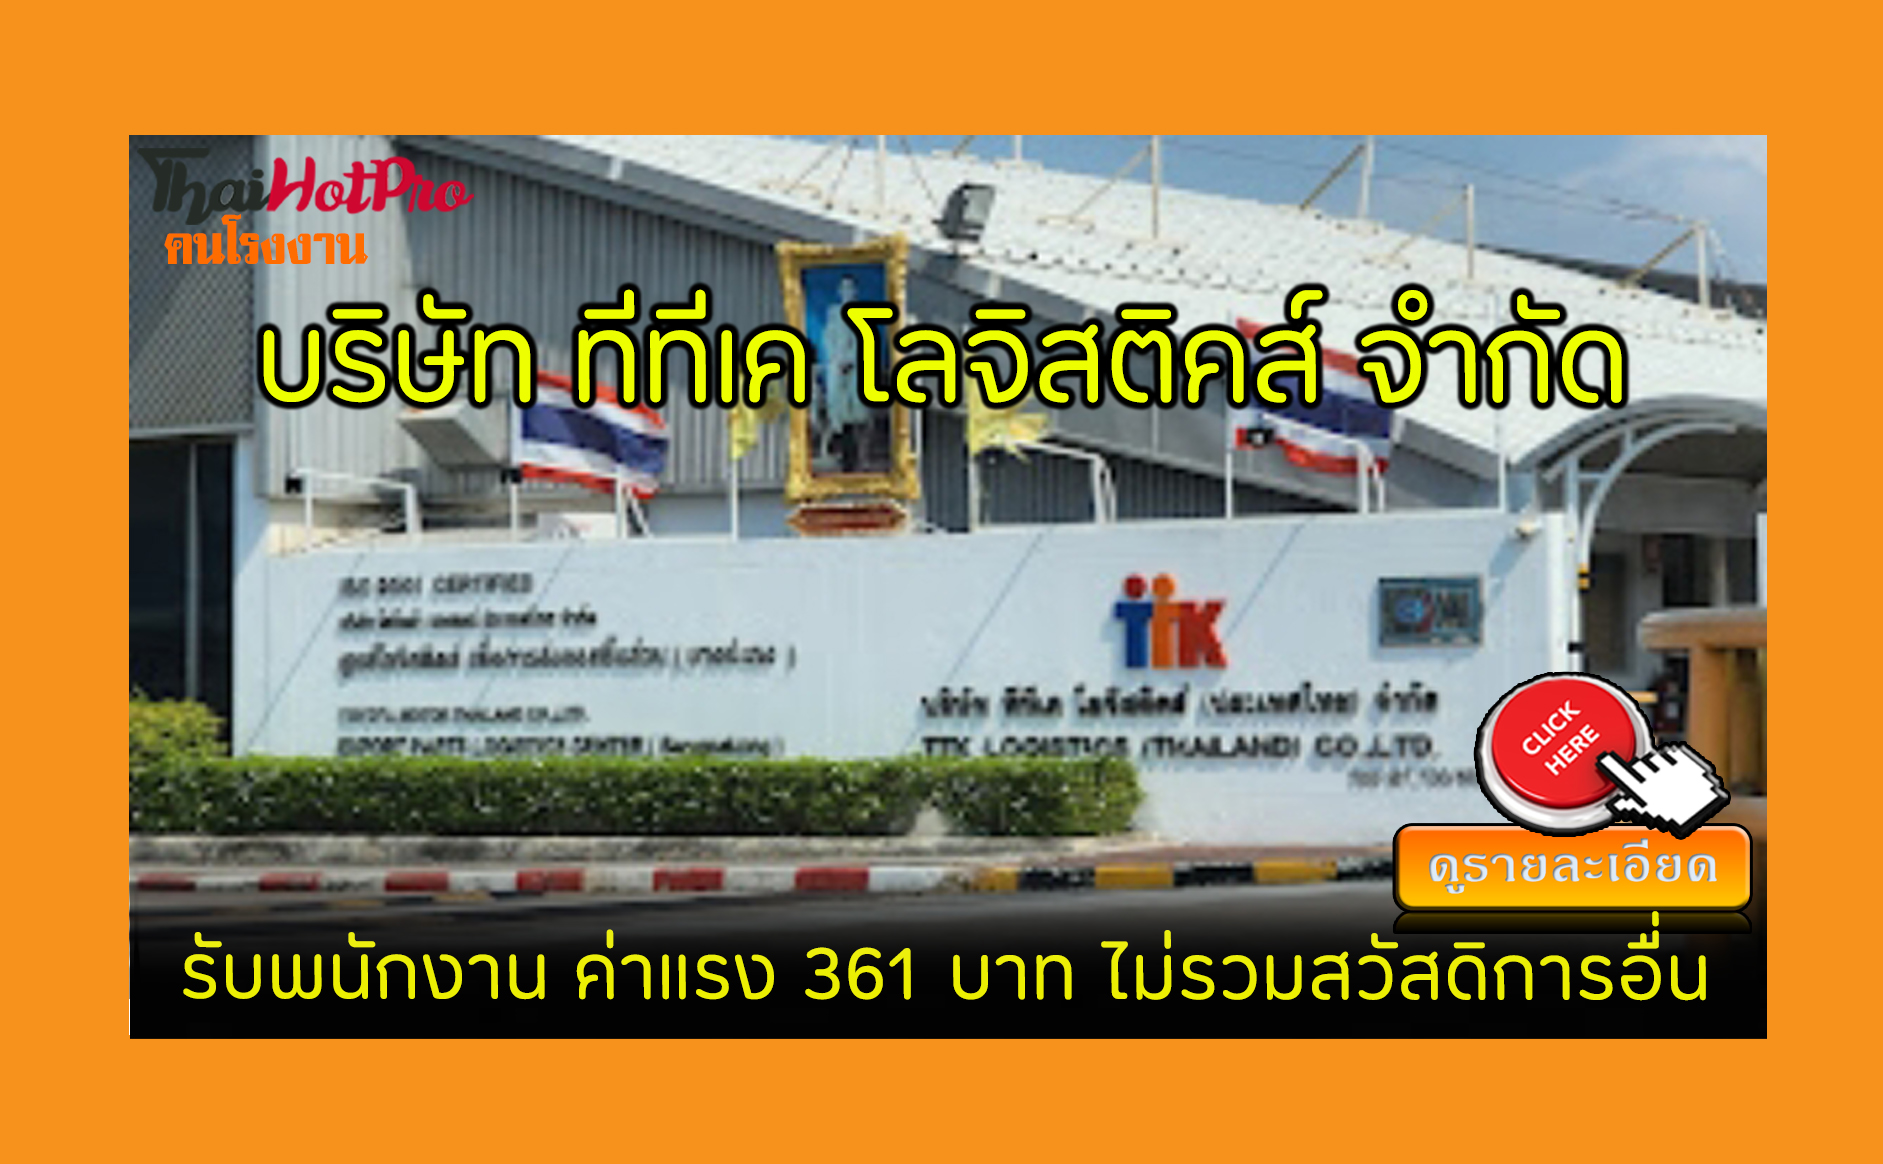 #ข่าวสมัครงาน รับสมัครพนักงาน บริษัท ทีทีเค โลจิสติคส์ (ประเทศไทย) จำกัด รับสมัครพนักงาน ค่าแรง 361 บาท ไม่รวมสวัสดิการอื่น พานทอง, ชลบุรี